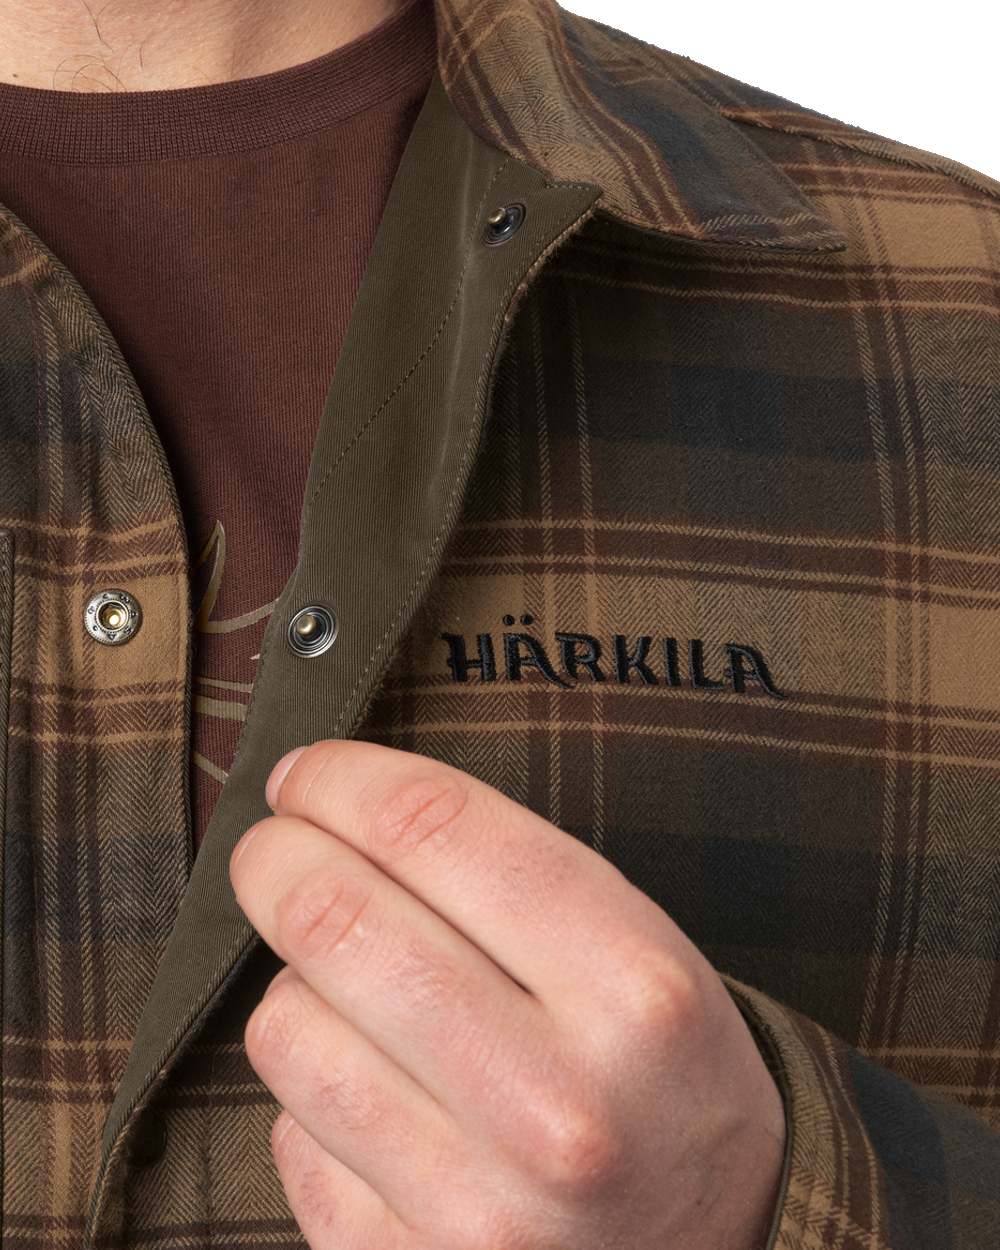 Dark Warm Olive/Burgundy coloured Harkila Eirik Reversible Shirt Jacket on white background